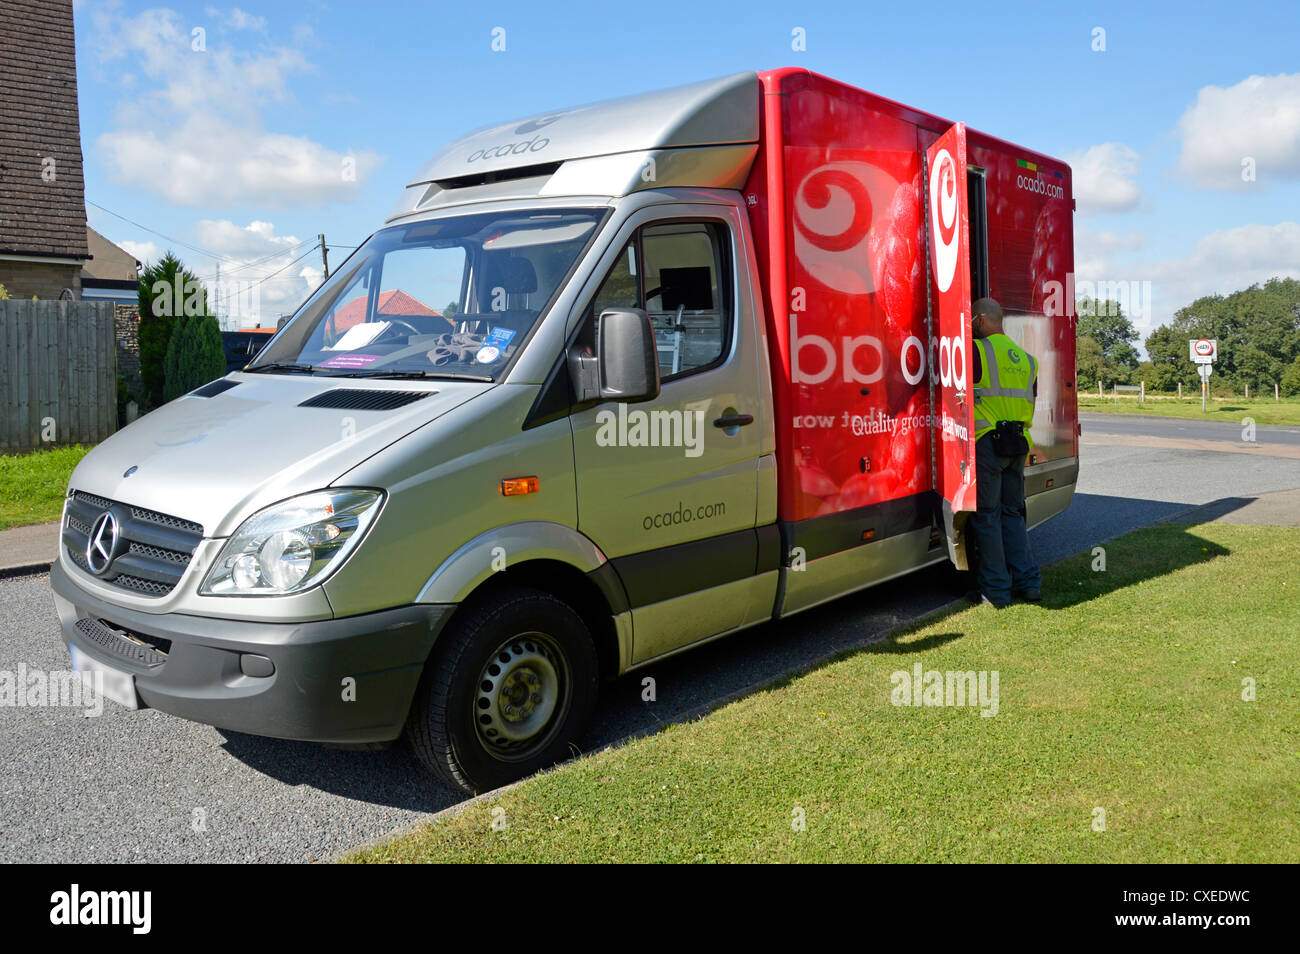 Ocado épicerie home delivery van stationné dans un conducteur qui tourne résidentielle se prépare à transporter des boîtes à Essex House England UK Banque D'Images